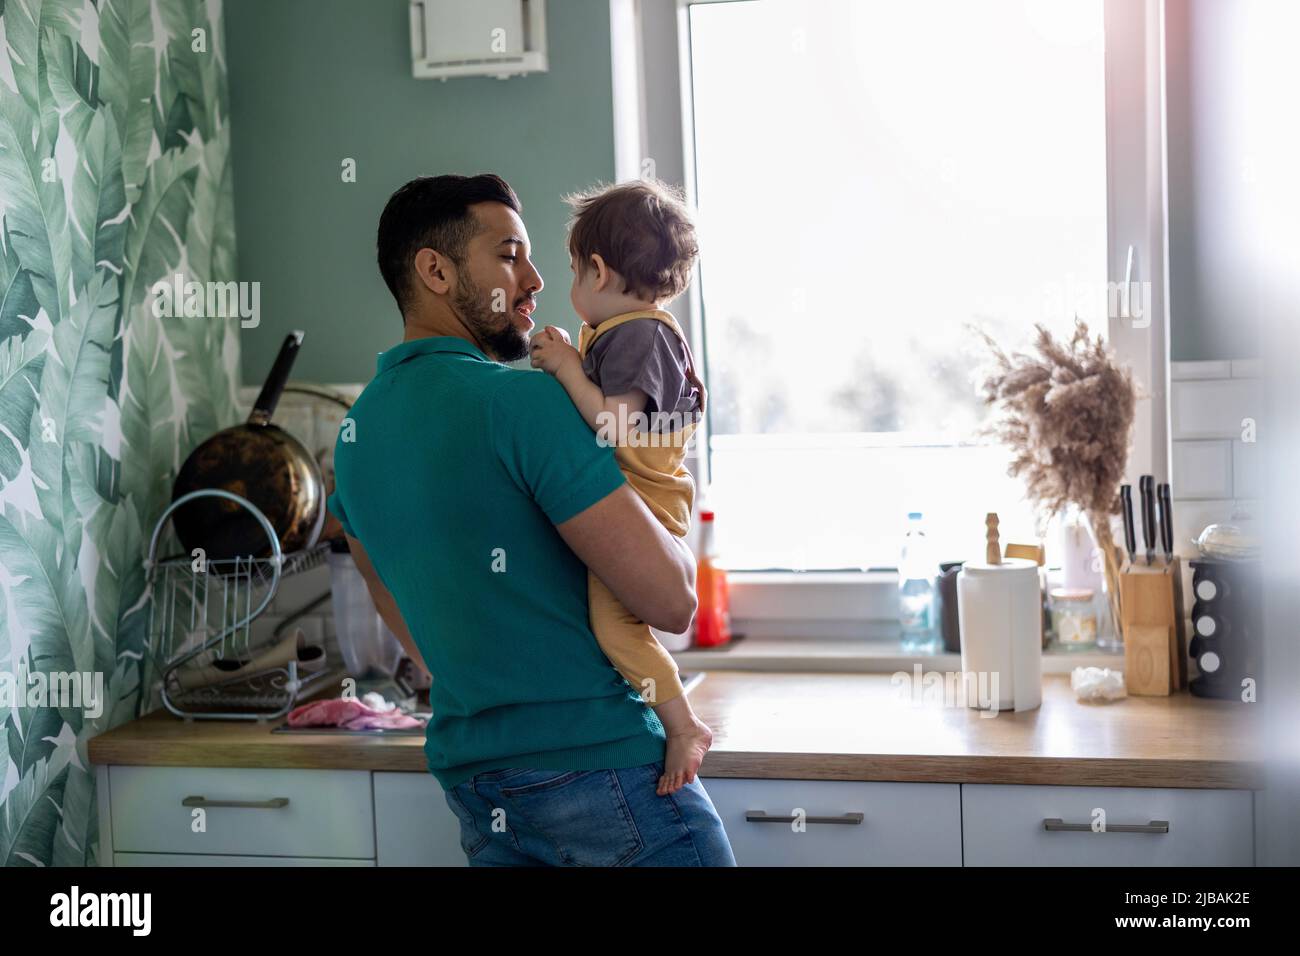 Vater mit seinem kleinen Kind in der heimischen Küche Stockfoto